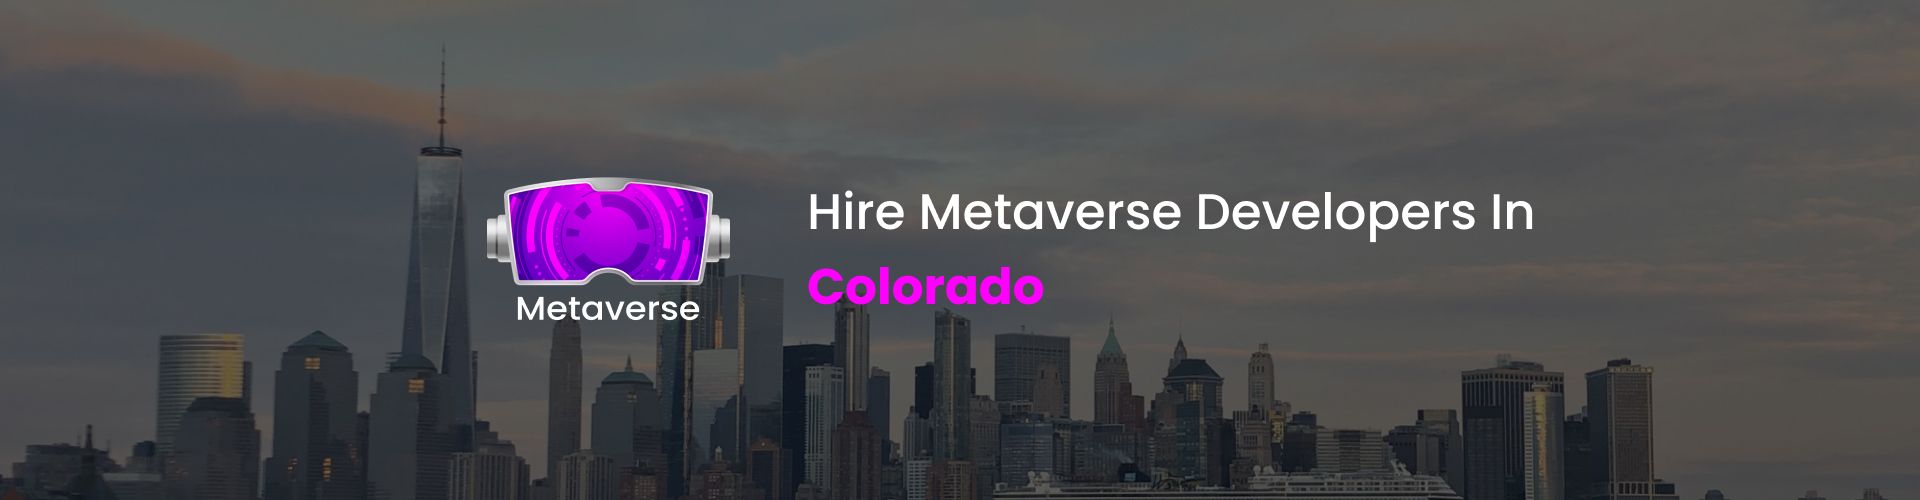 hire metaverse developers in colorado